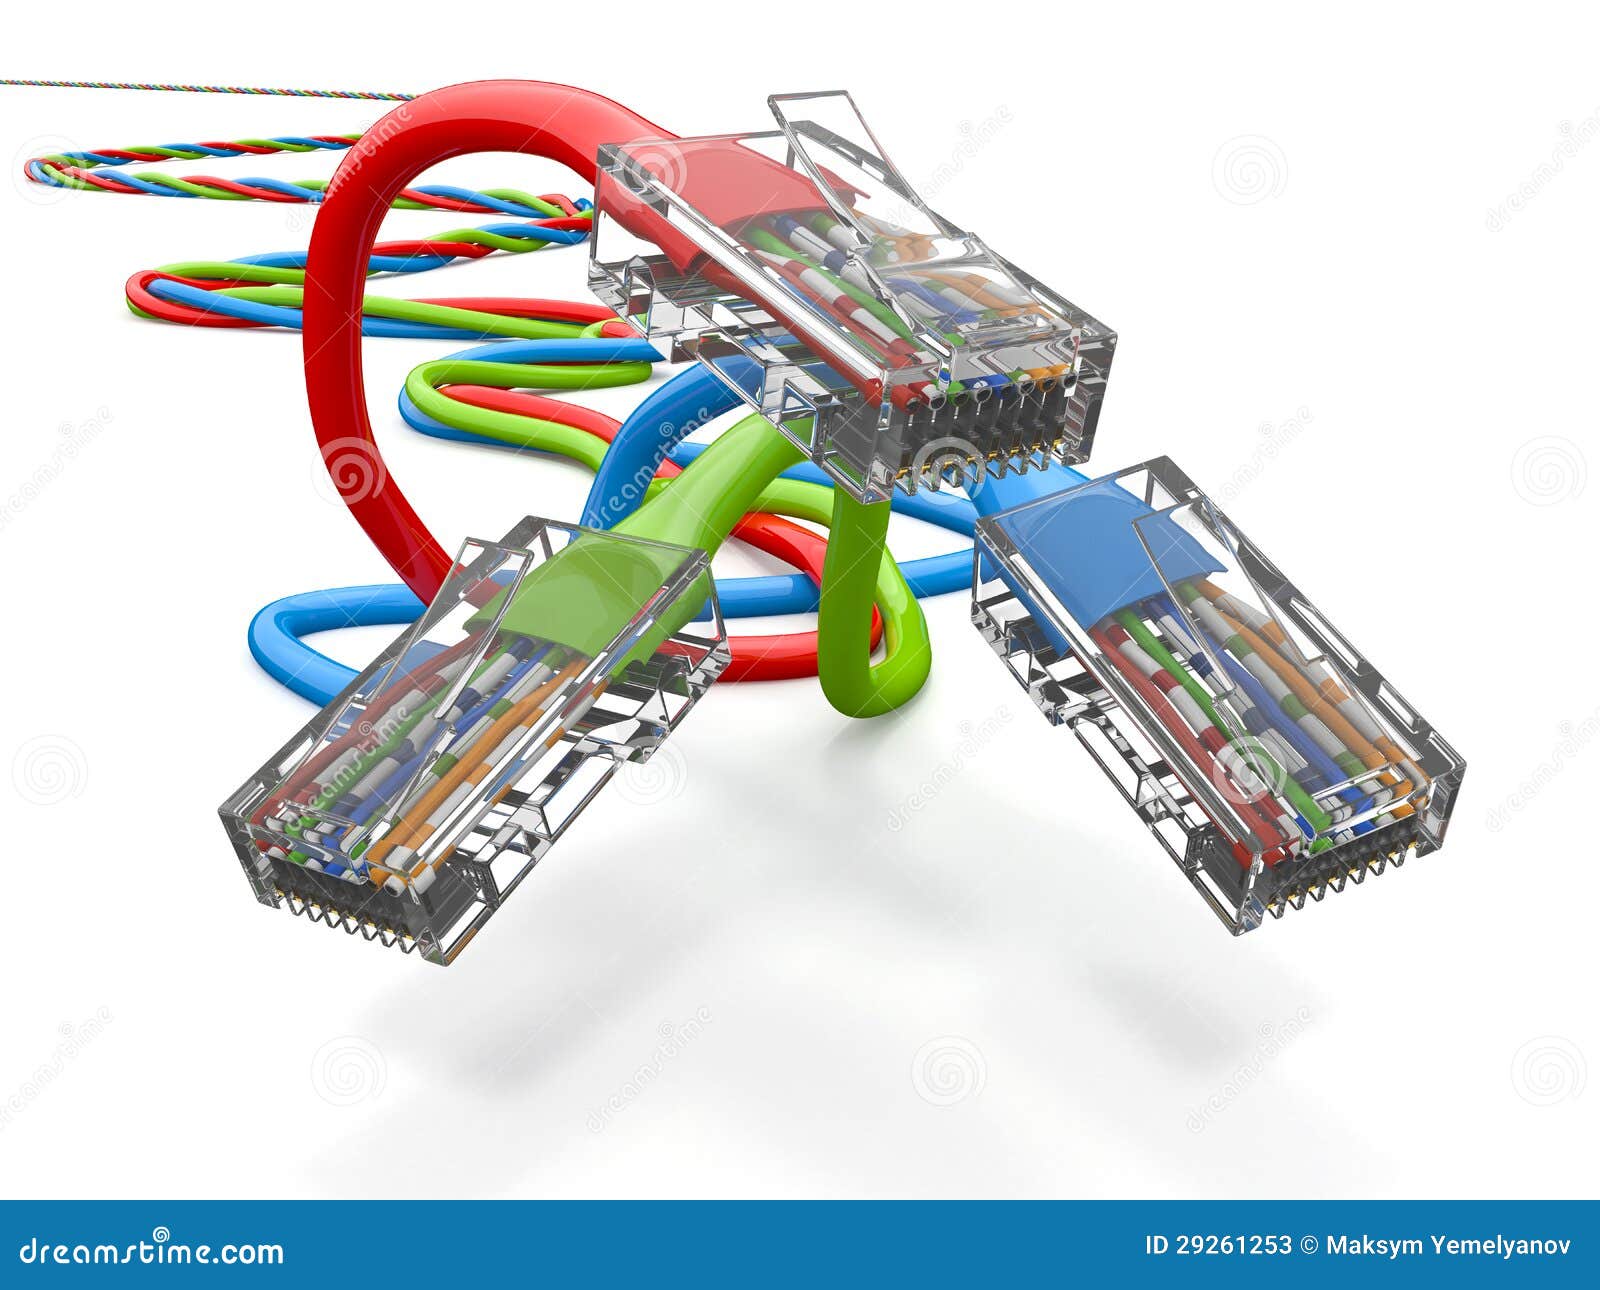 three computer network cables rj45. 3d